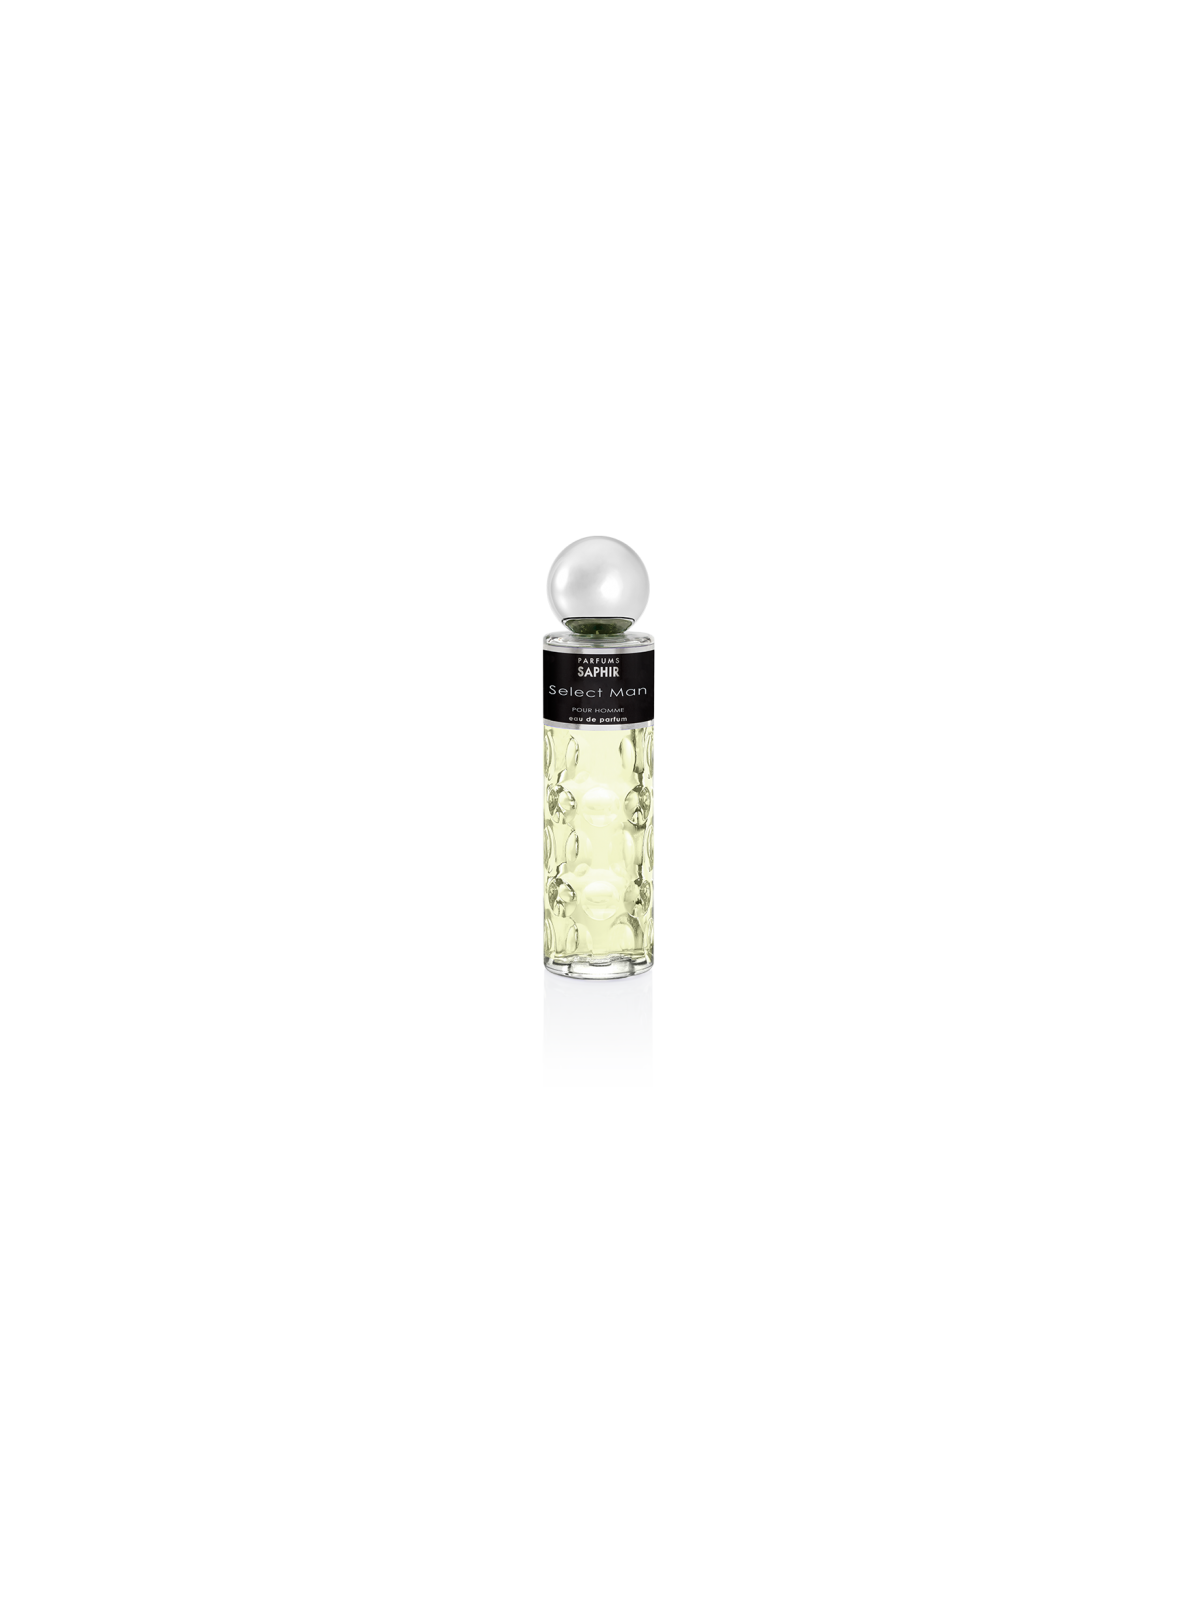 Comprar Perfume Saphir Select Man 200ML. en Perfumes para hombre por sólo 12,90 € o un precio específico de 12,90 € en Thalie Care